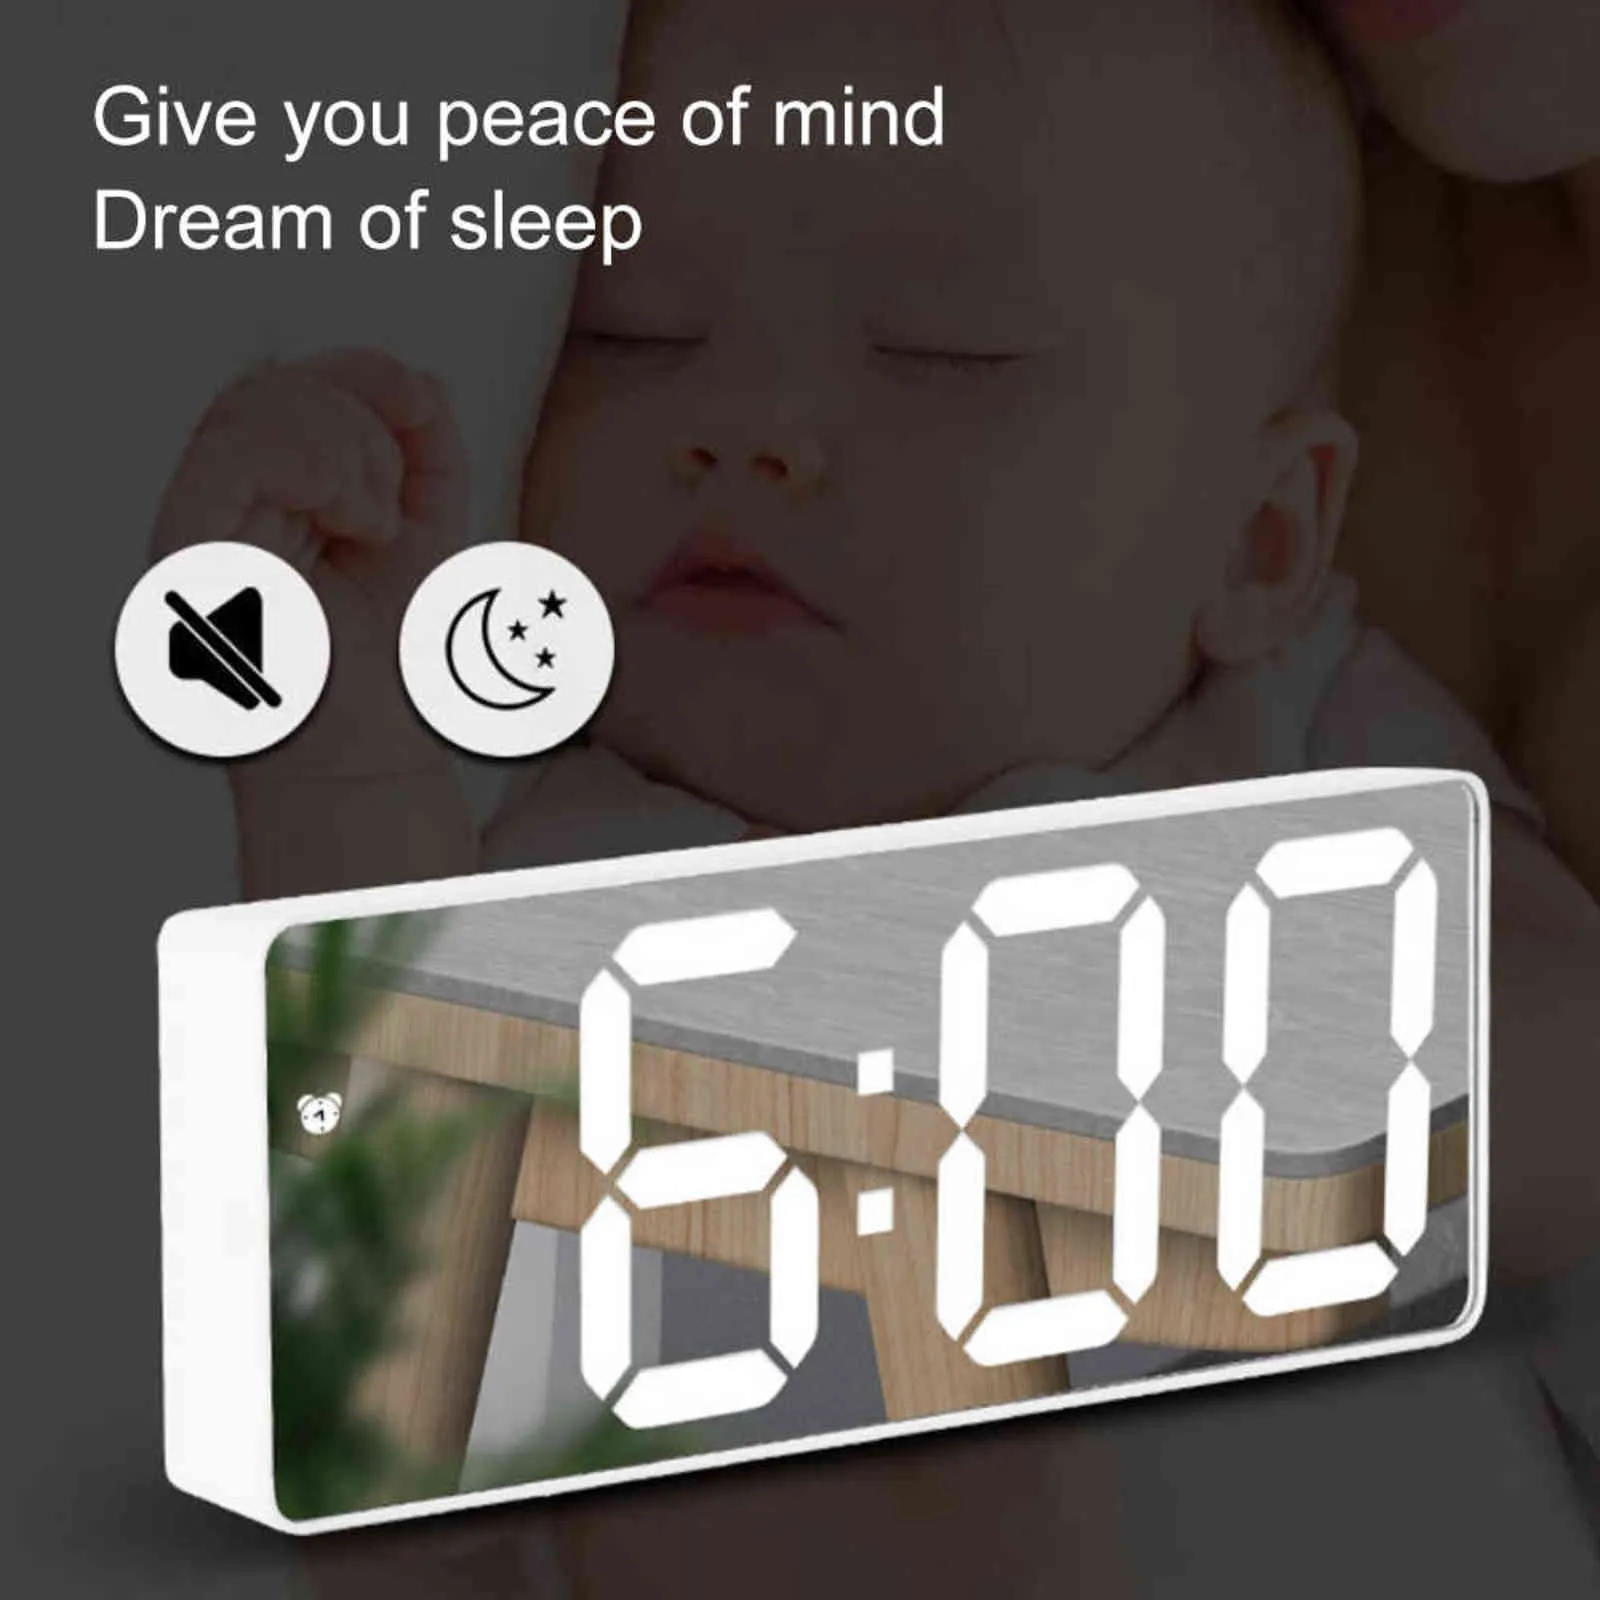 Acrylique / Miroir Réveil LED Horloge numérique Commande vocale Snooze Temps Affichage de la température Mode nuit Horloge de bureau pour chambre 211112